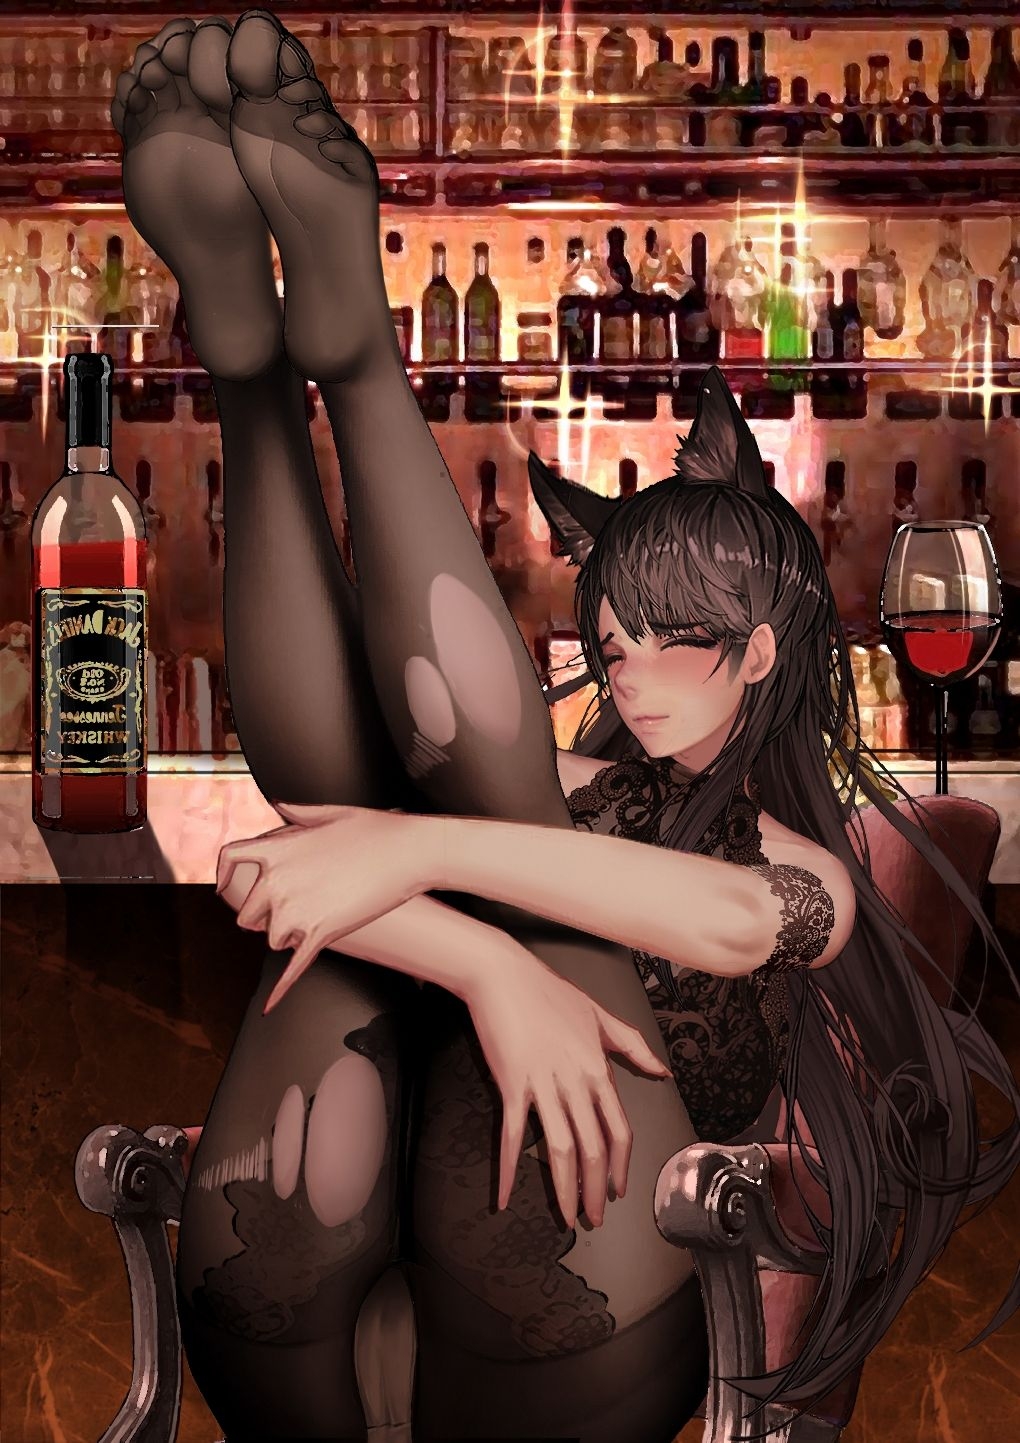 [-kudagu-] atago in the bar (Azur Lane) 2